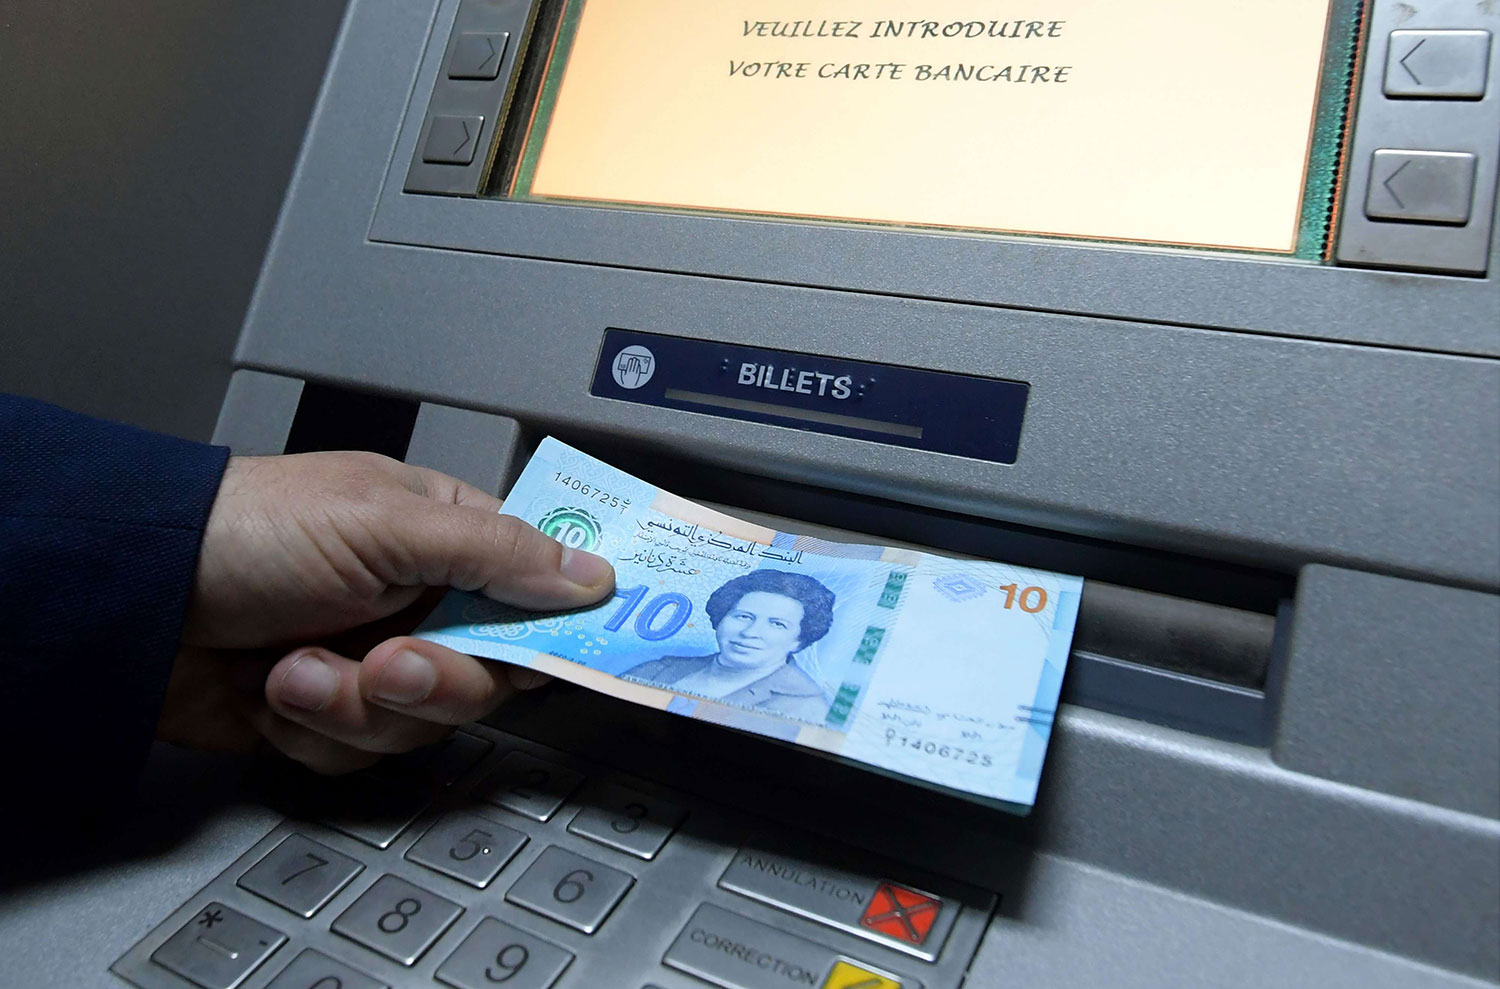 المخاطر تحيط بالبنوك التونسية وتحذيرات من هشاشة القطاع المصرفي